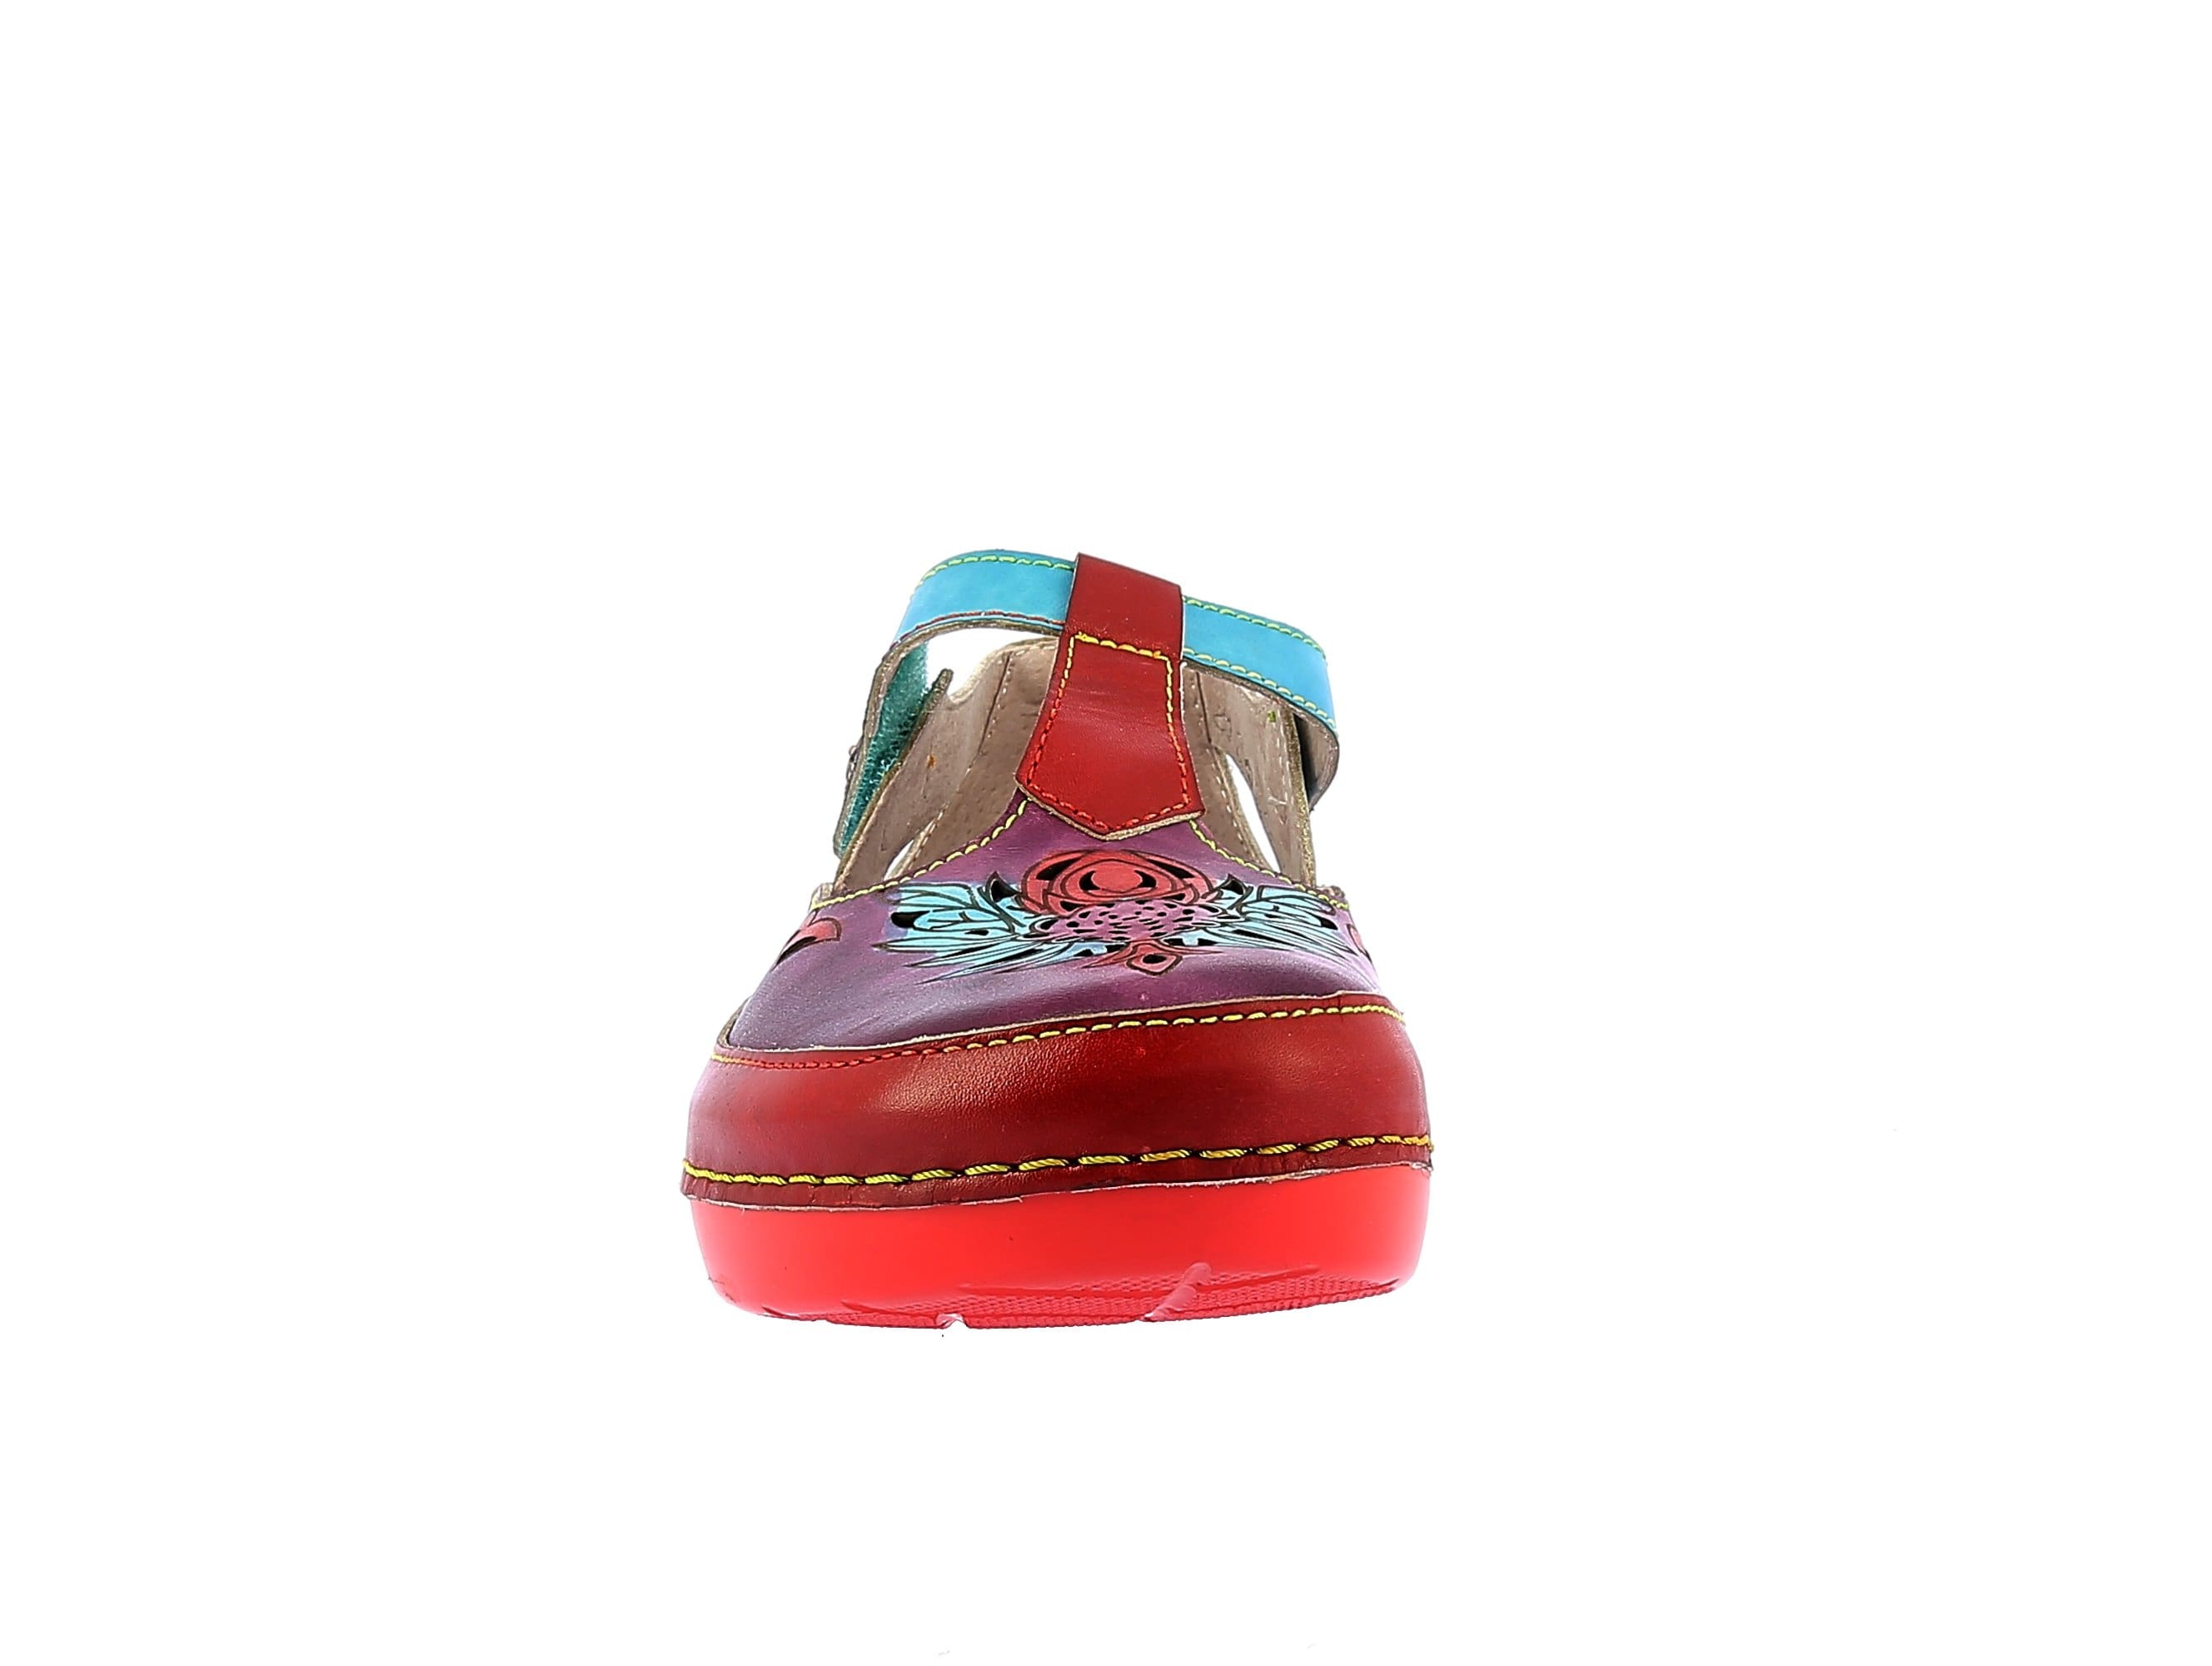 Schuhe BICLLYO 24 - Sandale